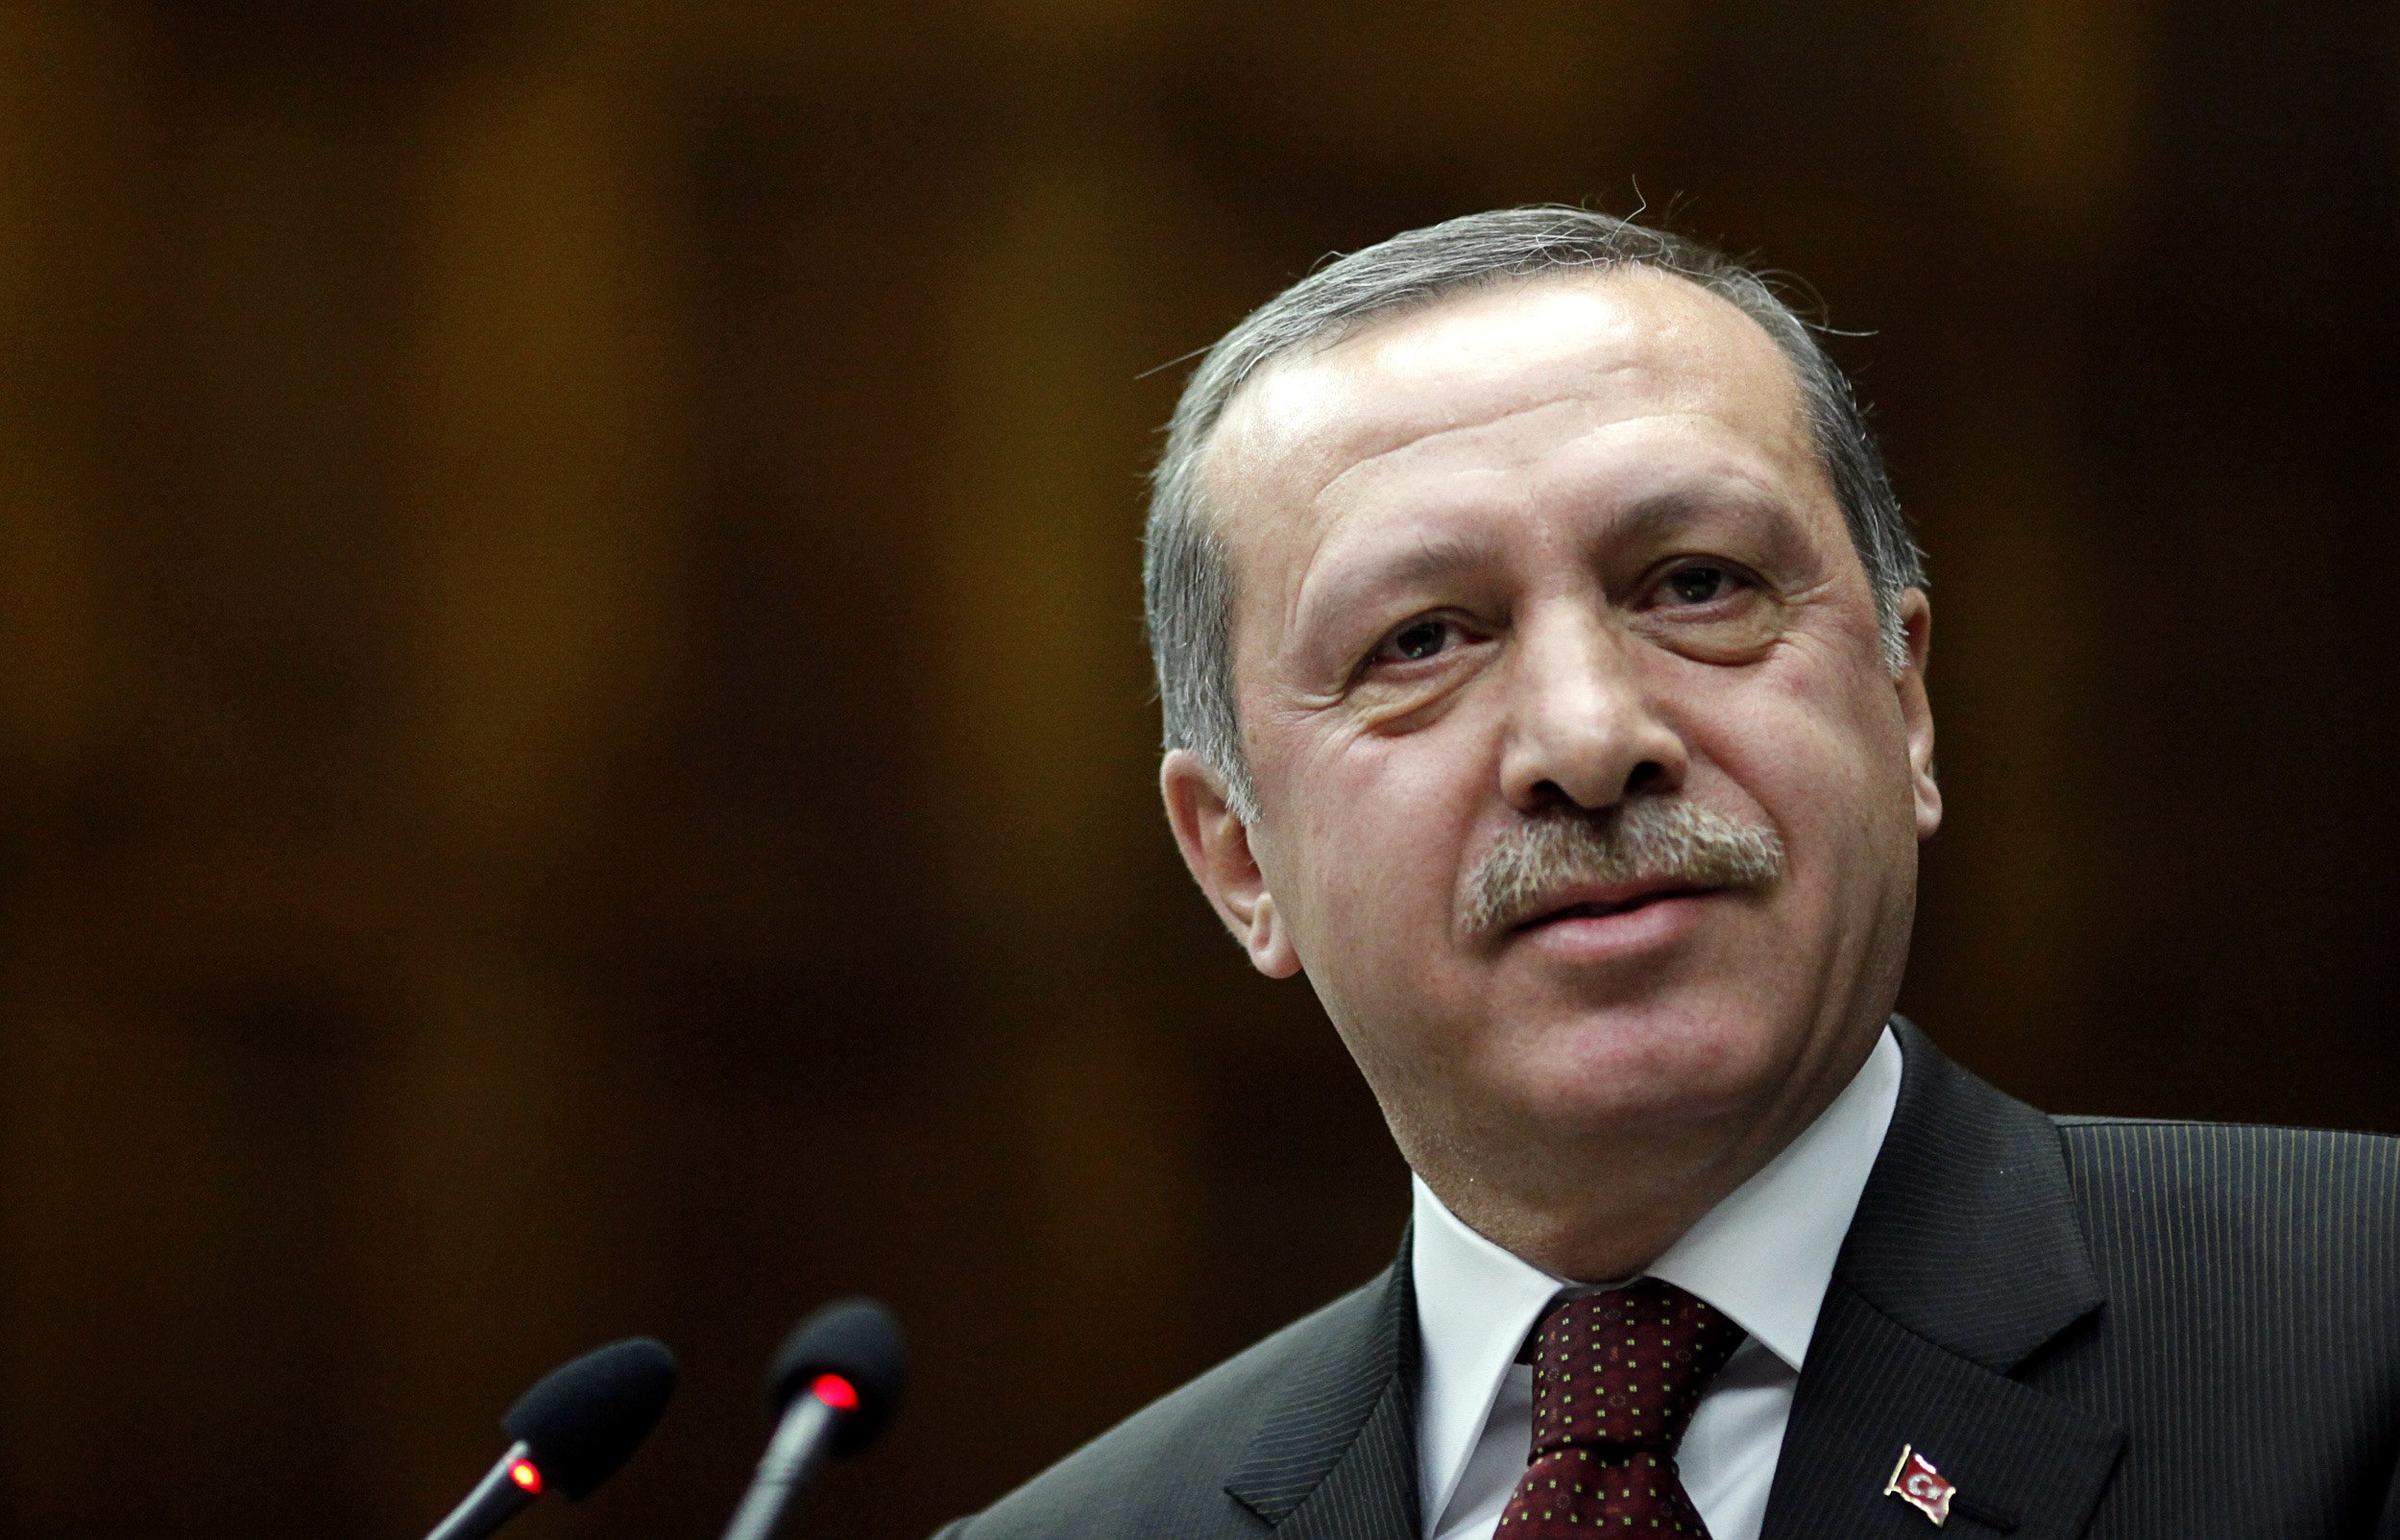 Ερντογάν: “Ελπίζω ότι η Ελλάδα θα ξεπεράσει το πρόβλημα”